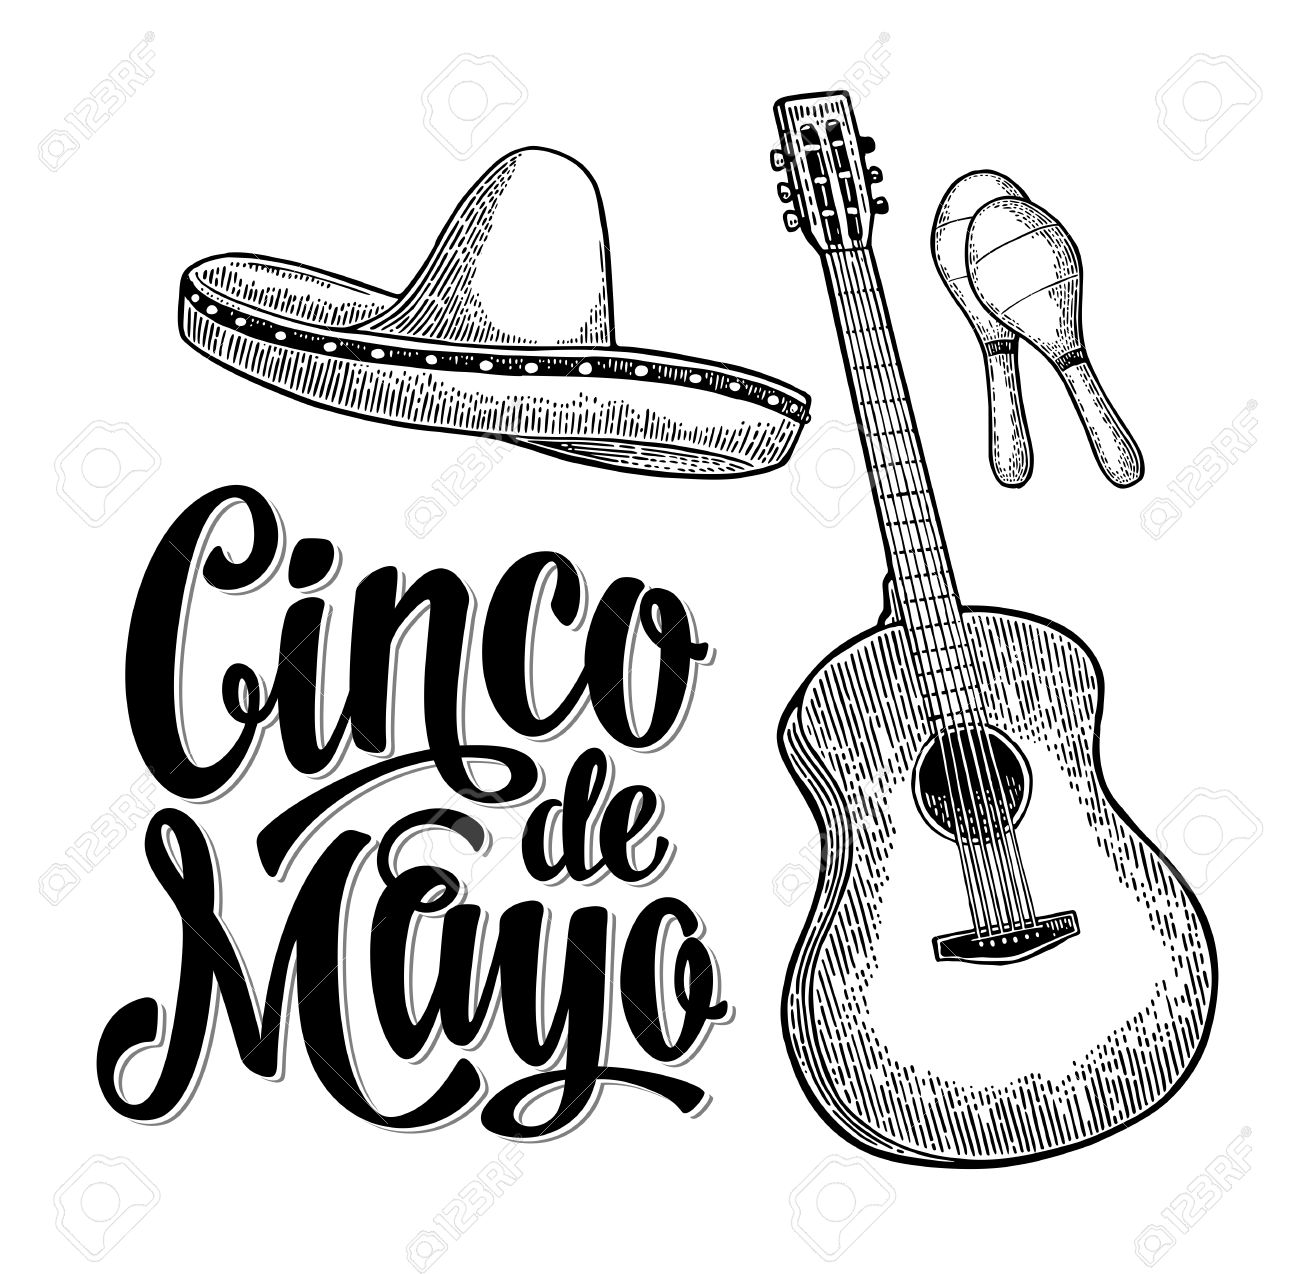 Cinco de Mayo lettering and guitar, maracas and sombrero